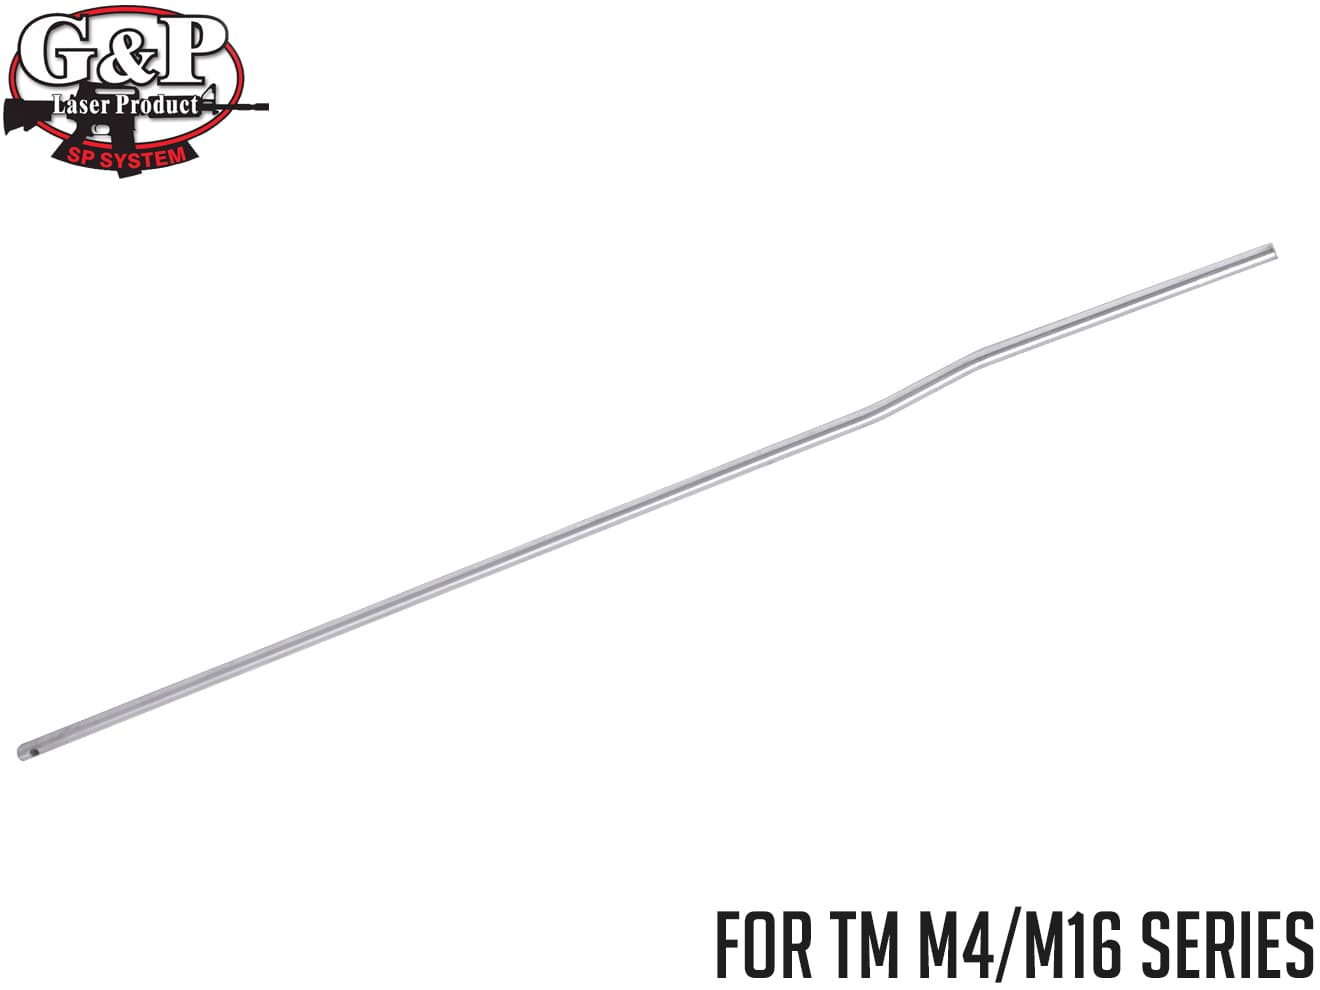 G&P M16A2 ライフルレングス ガスチューブ◆12インチ対応 ルイ要加工 リアルサイズM16に対応